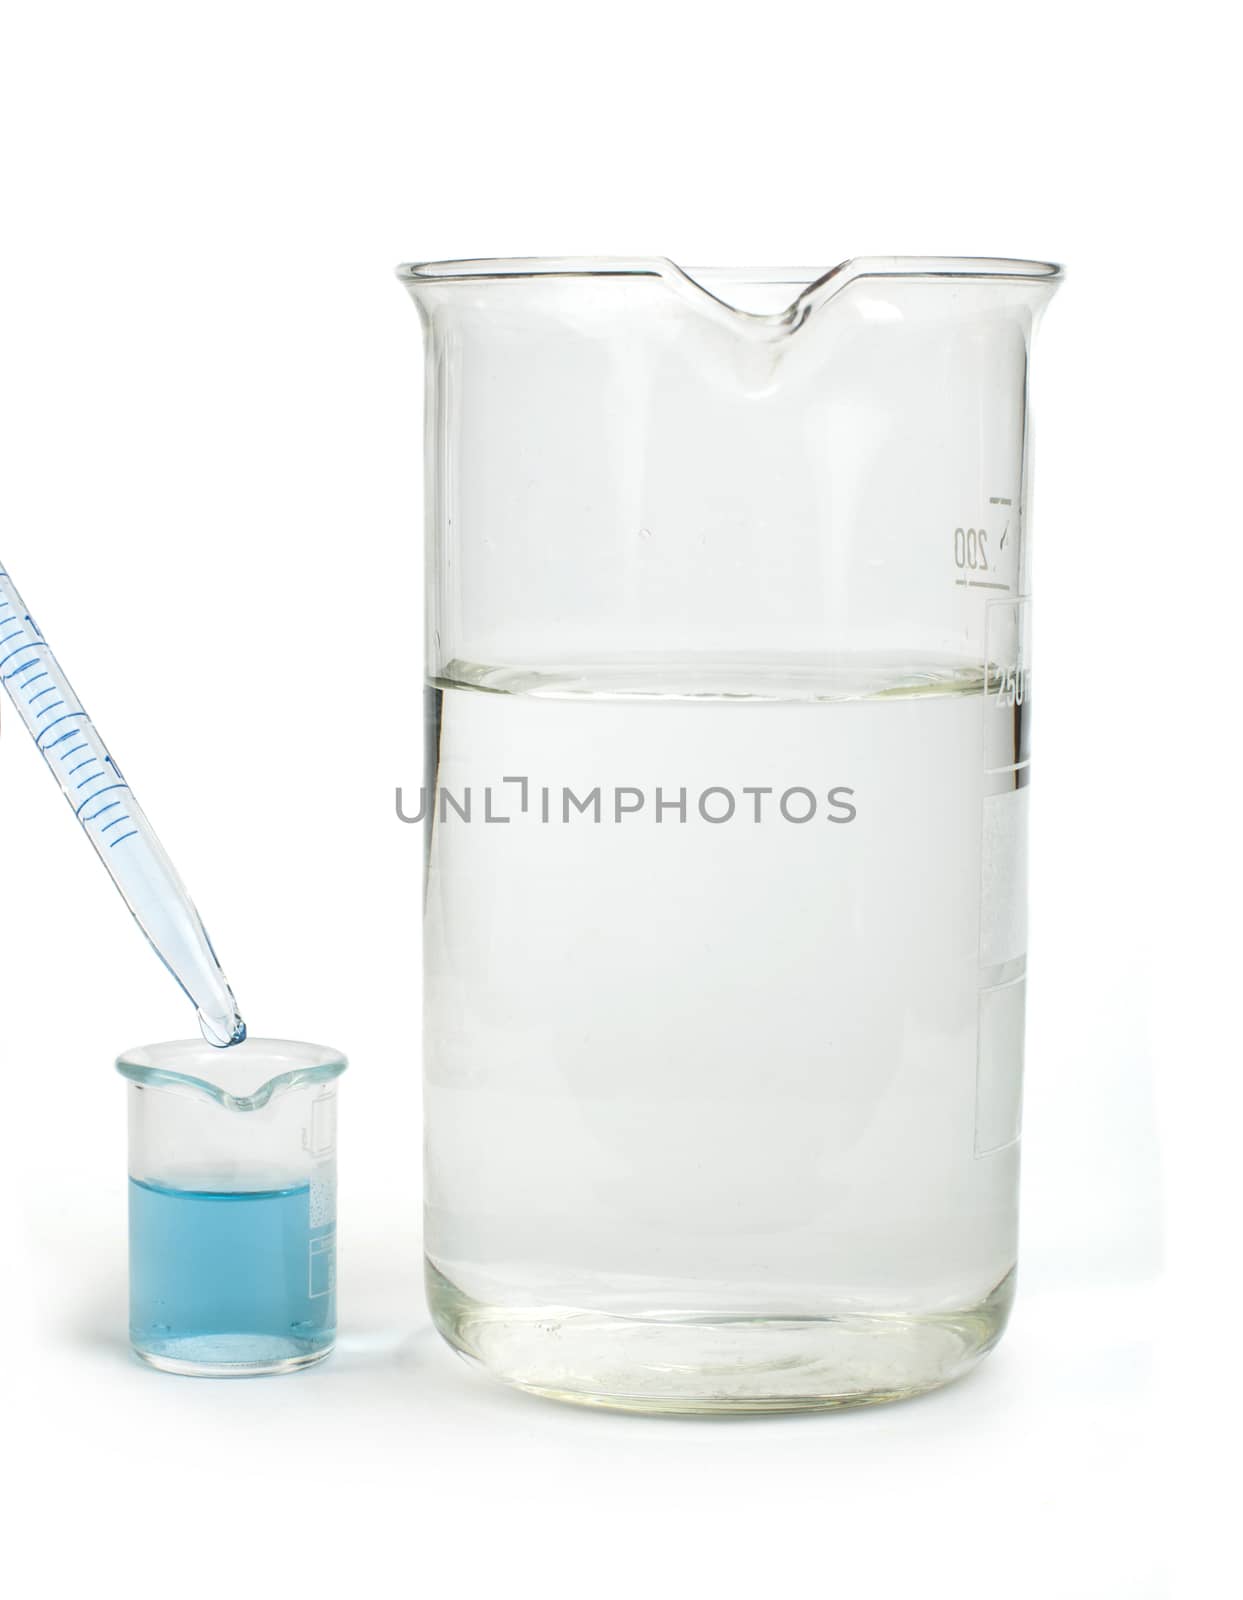 Laboratory glassware equipment. Laboratory beakers